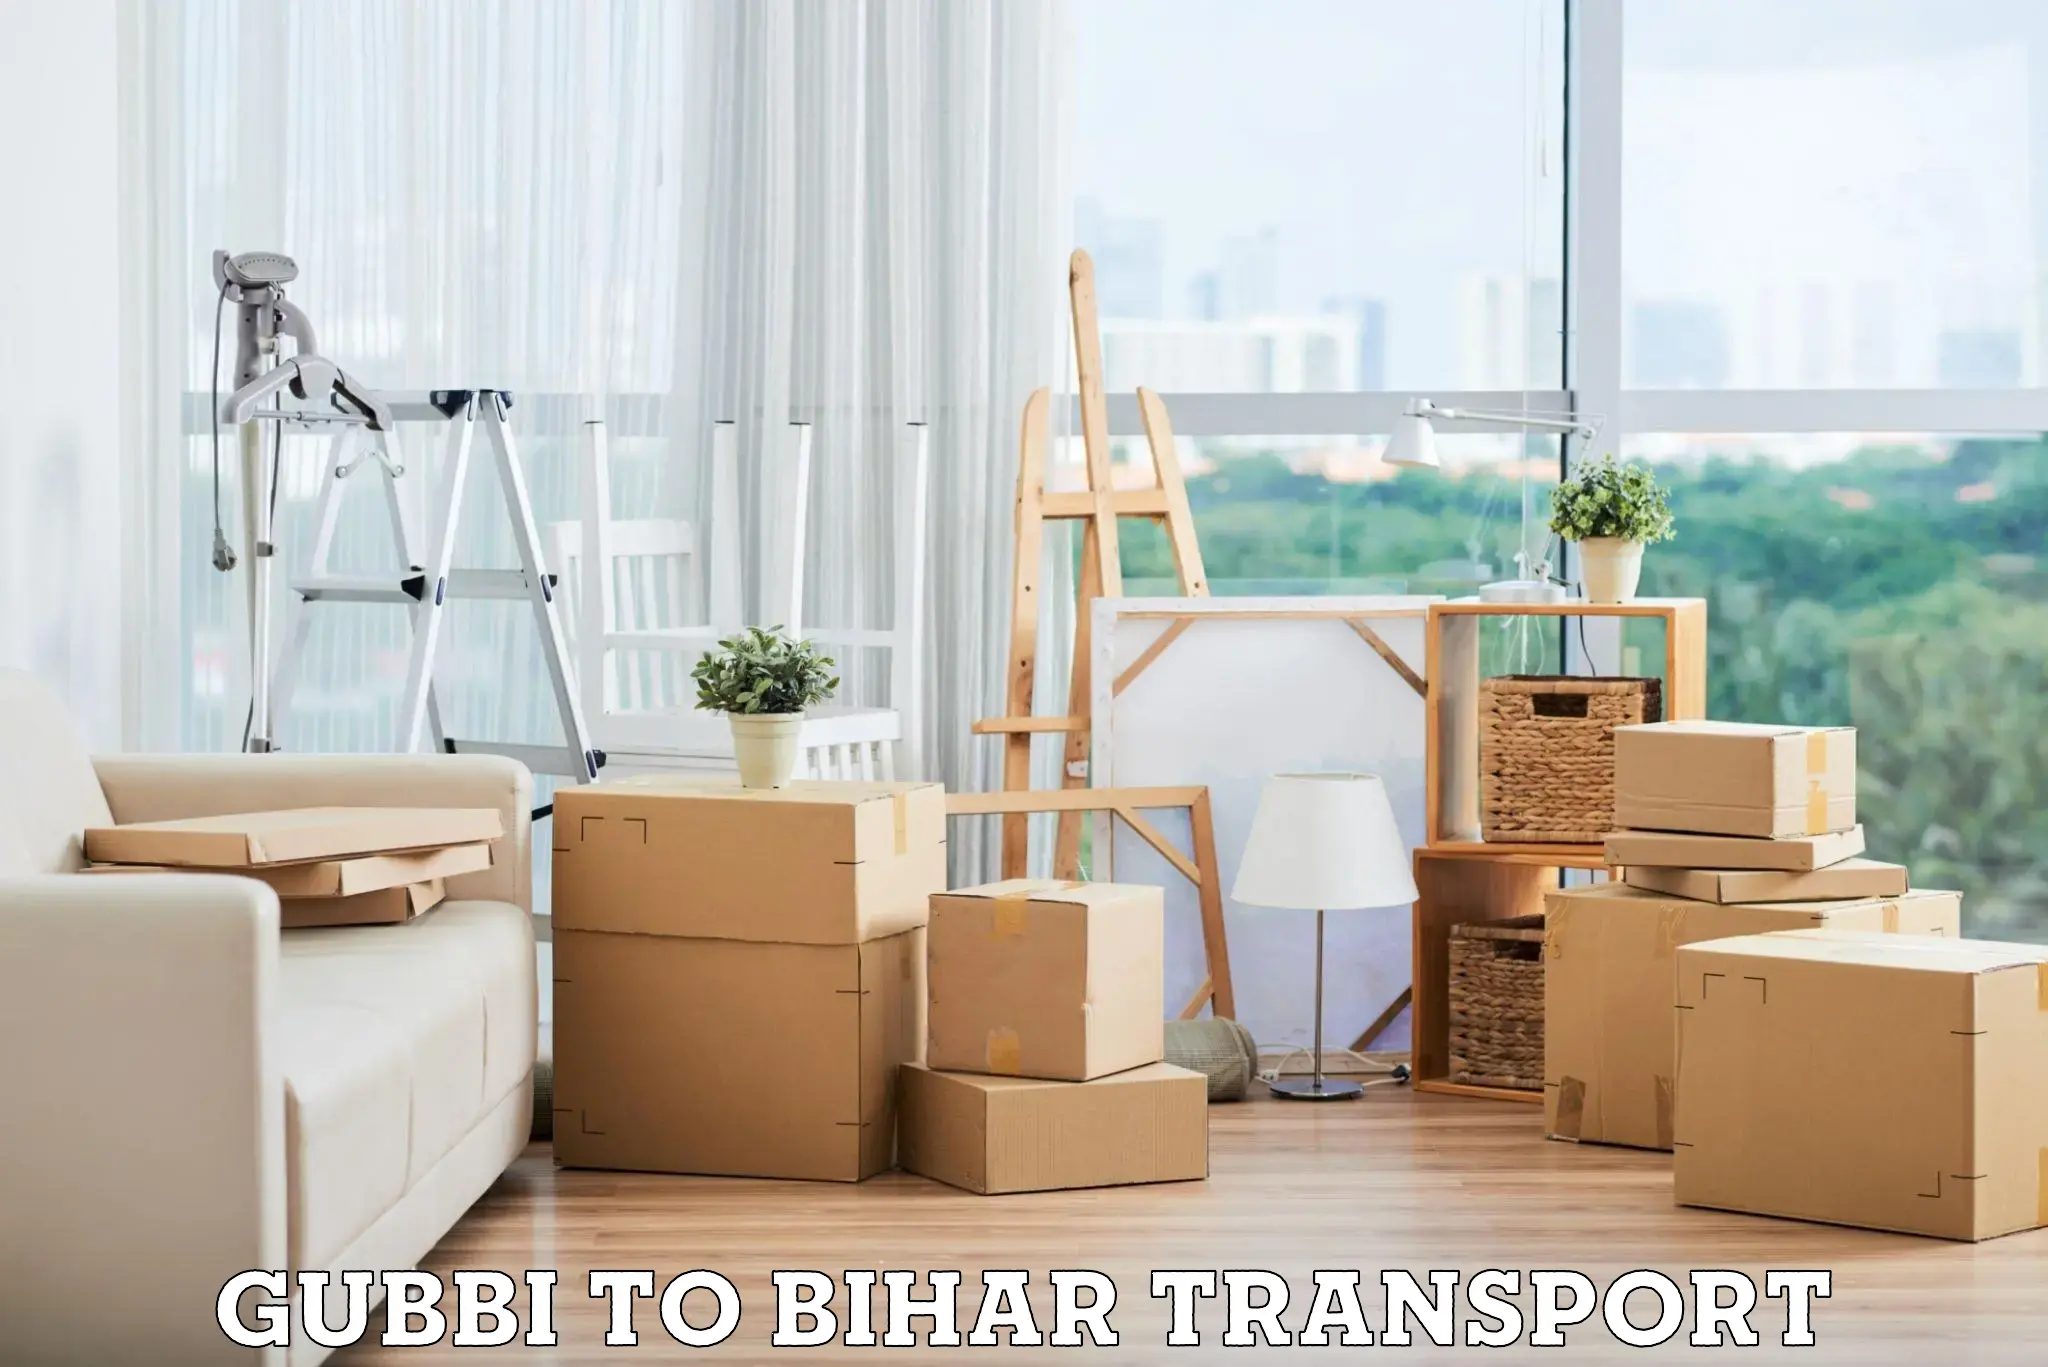 Furniture transport service Gubbi to Kamtaul